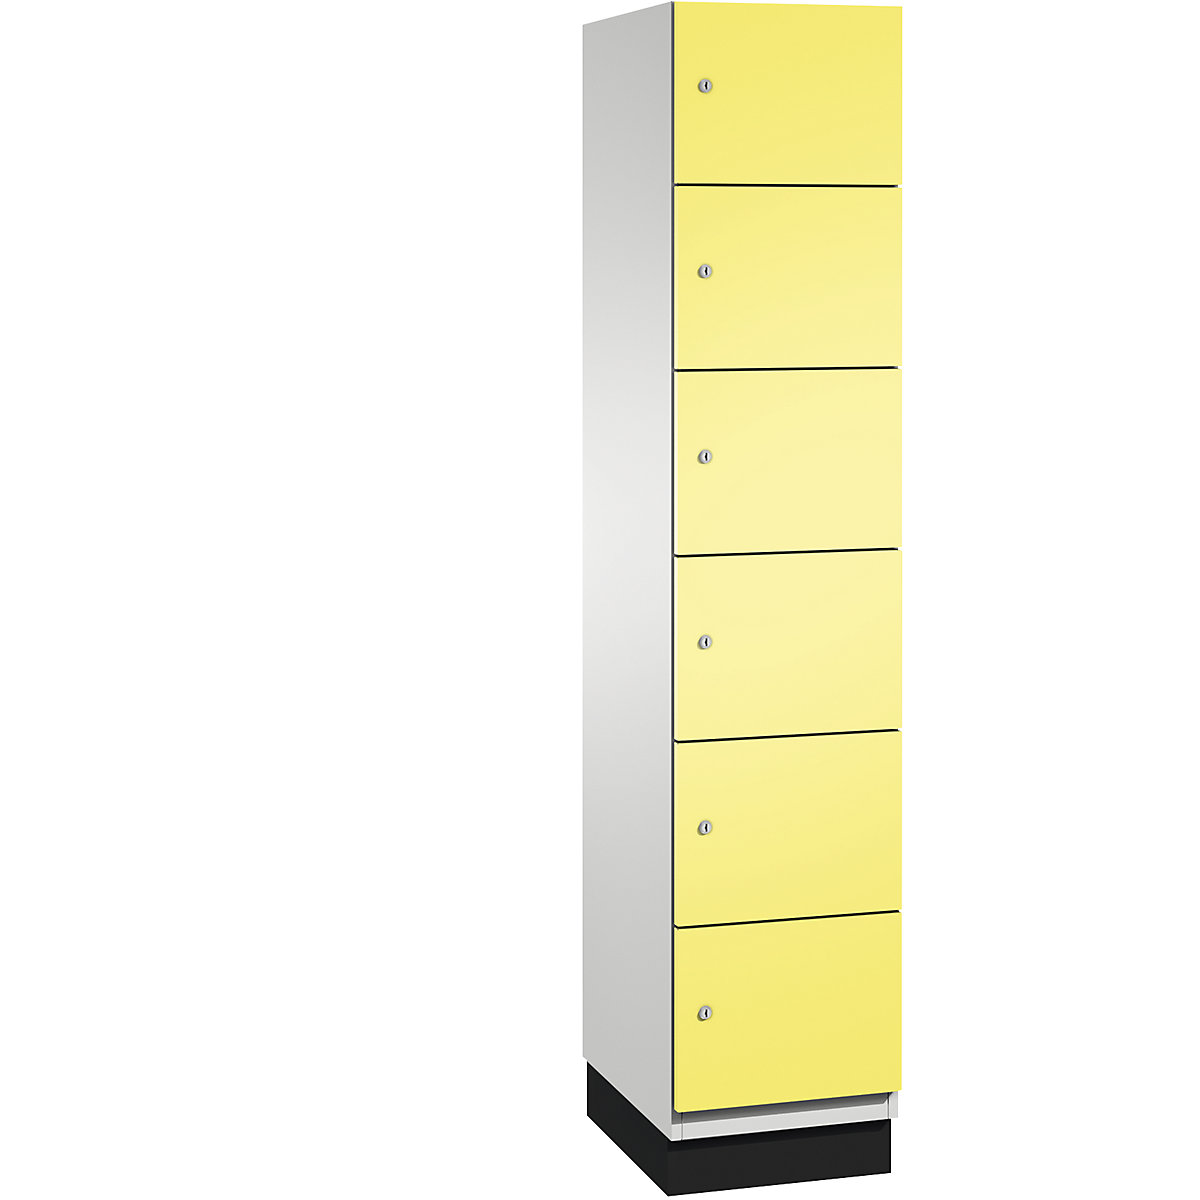 C+P – Skříň s uzamykatelnými boxy CAMBIO s dveřmi z ocelového plechu, 6 boxů, šířka 400 mm, korpus světlý šedý / dveře sírové žluté